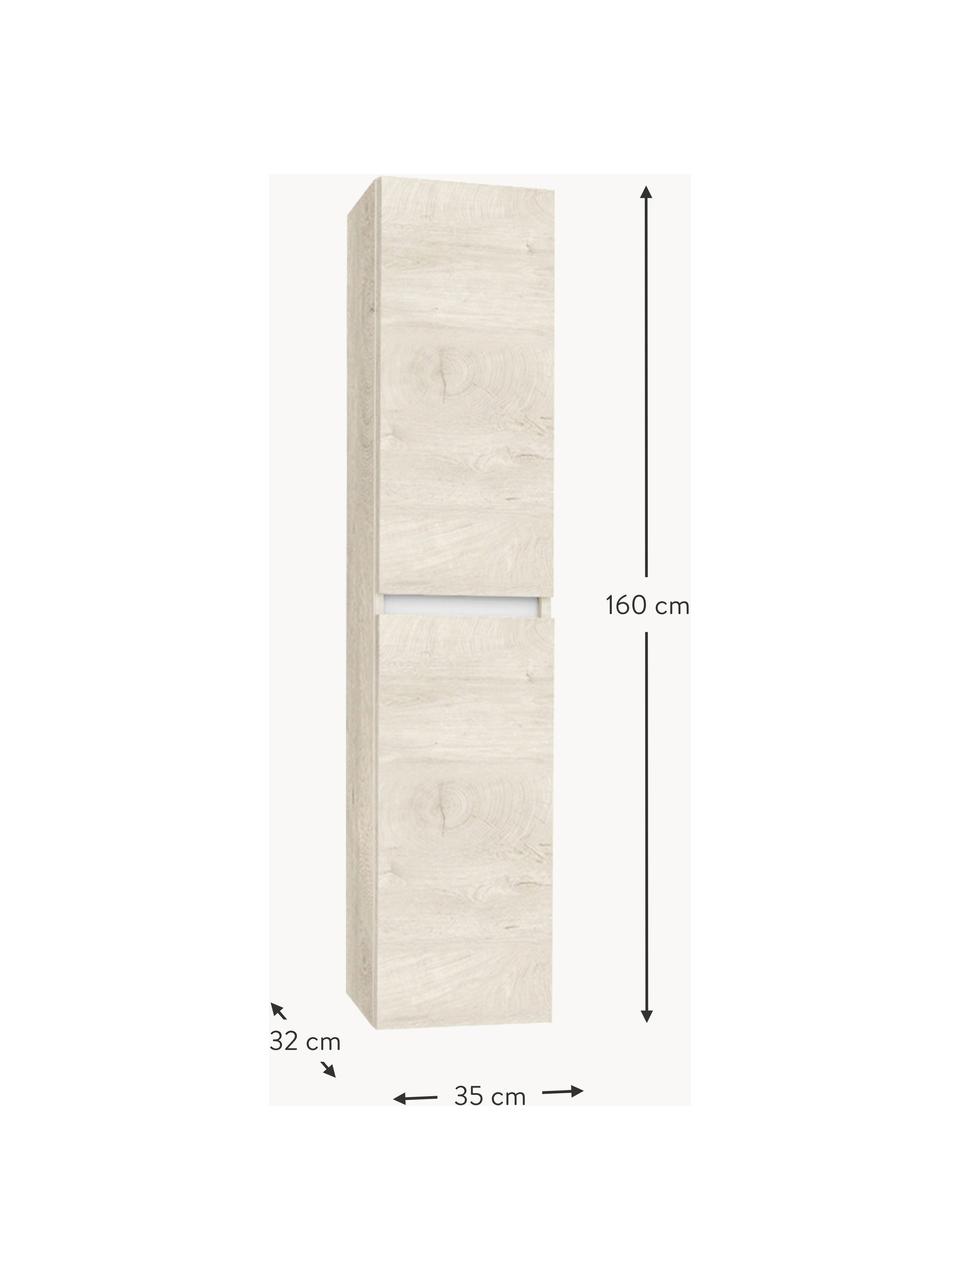 Vysoká kúpeľňová skrinka Perth, Š 35 cm, So vzhľadom dubového dreva, Š 35 x V 160 cm